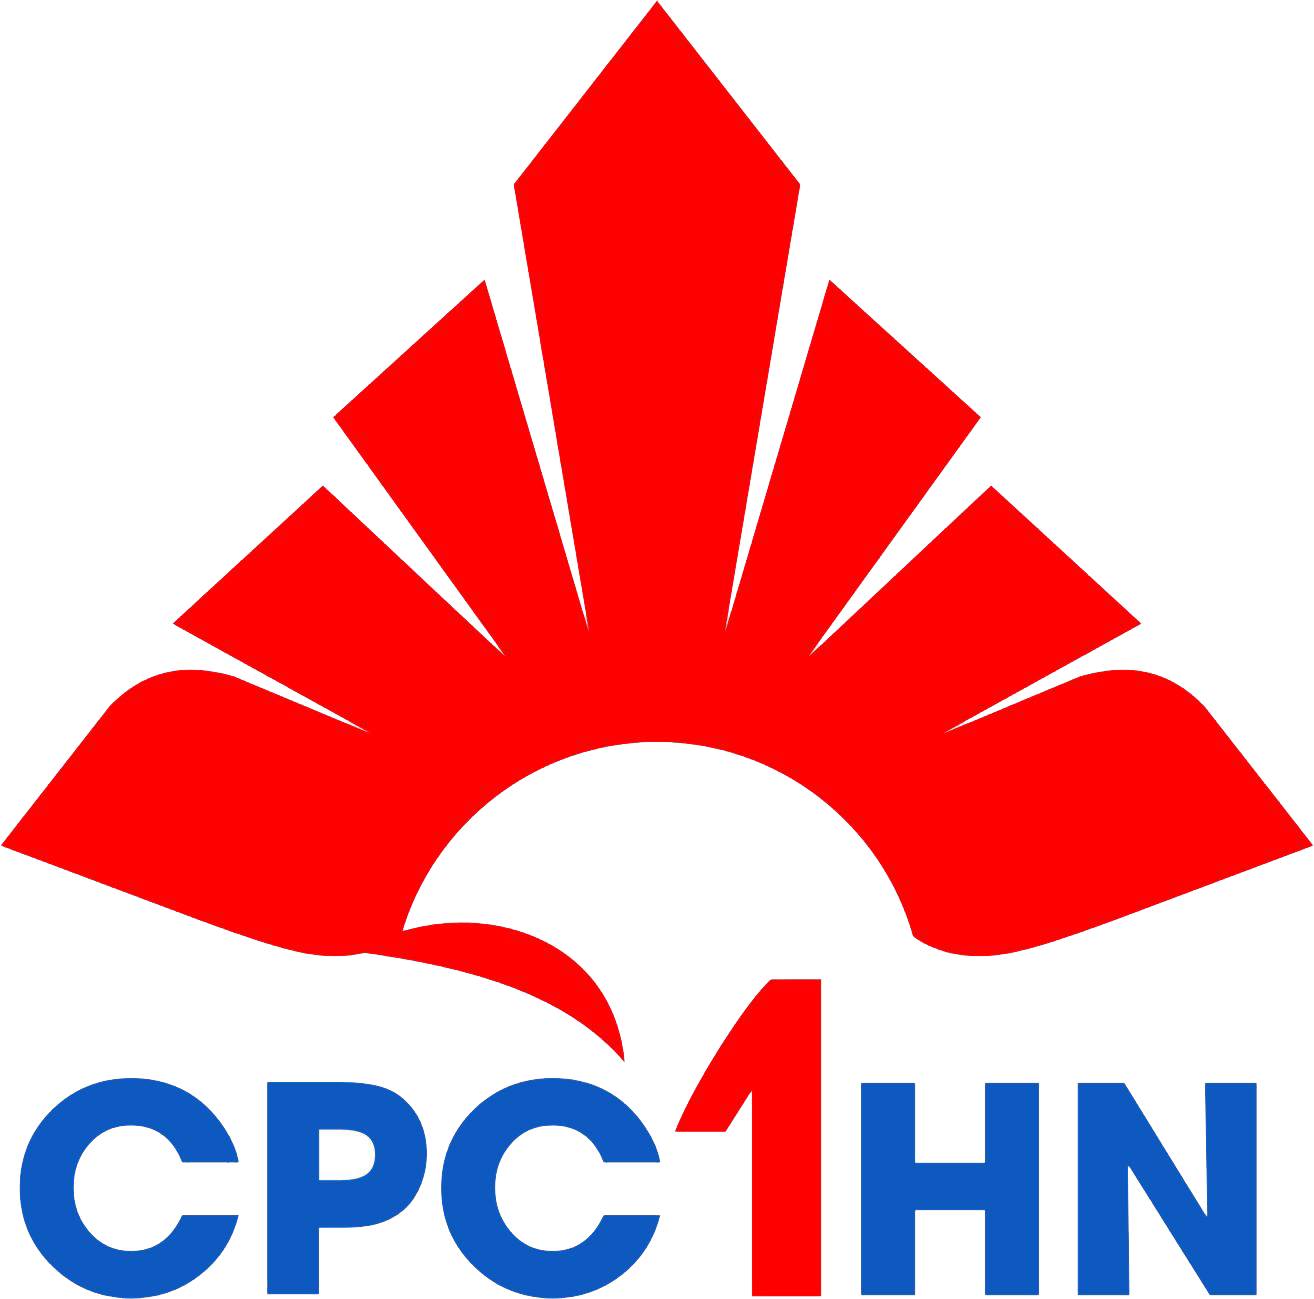 Công ty Cổ phần Dược phẩm CPC1 Hà Nội - Hồ Chí Minh,Bình Dương,Long An recruitment